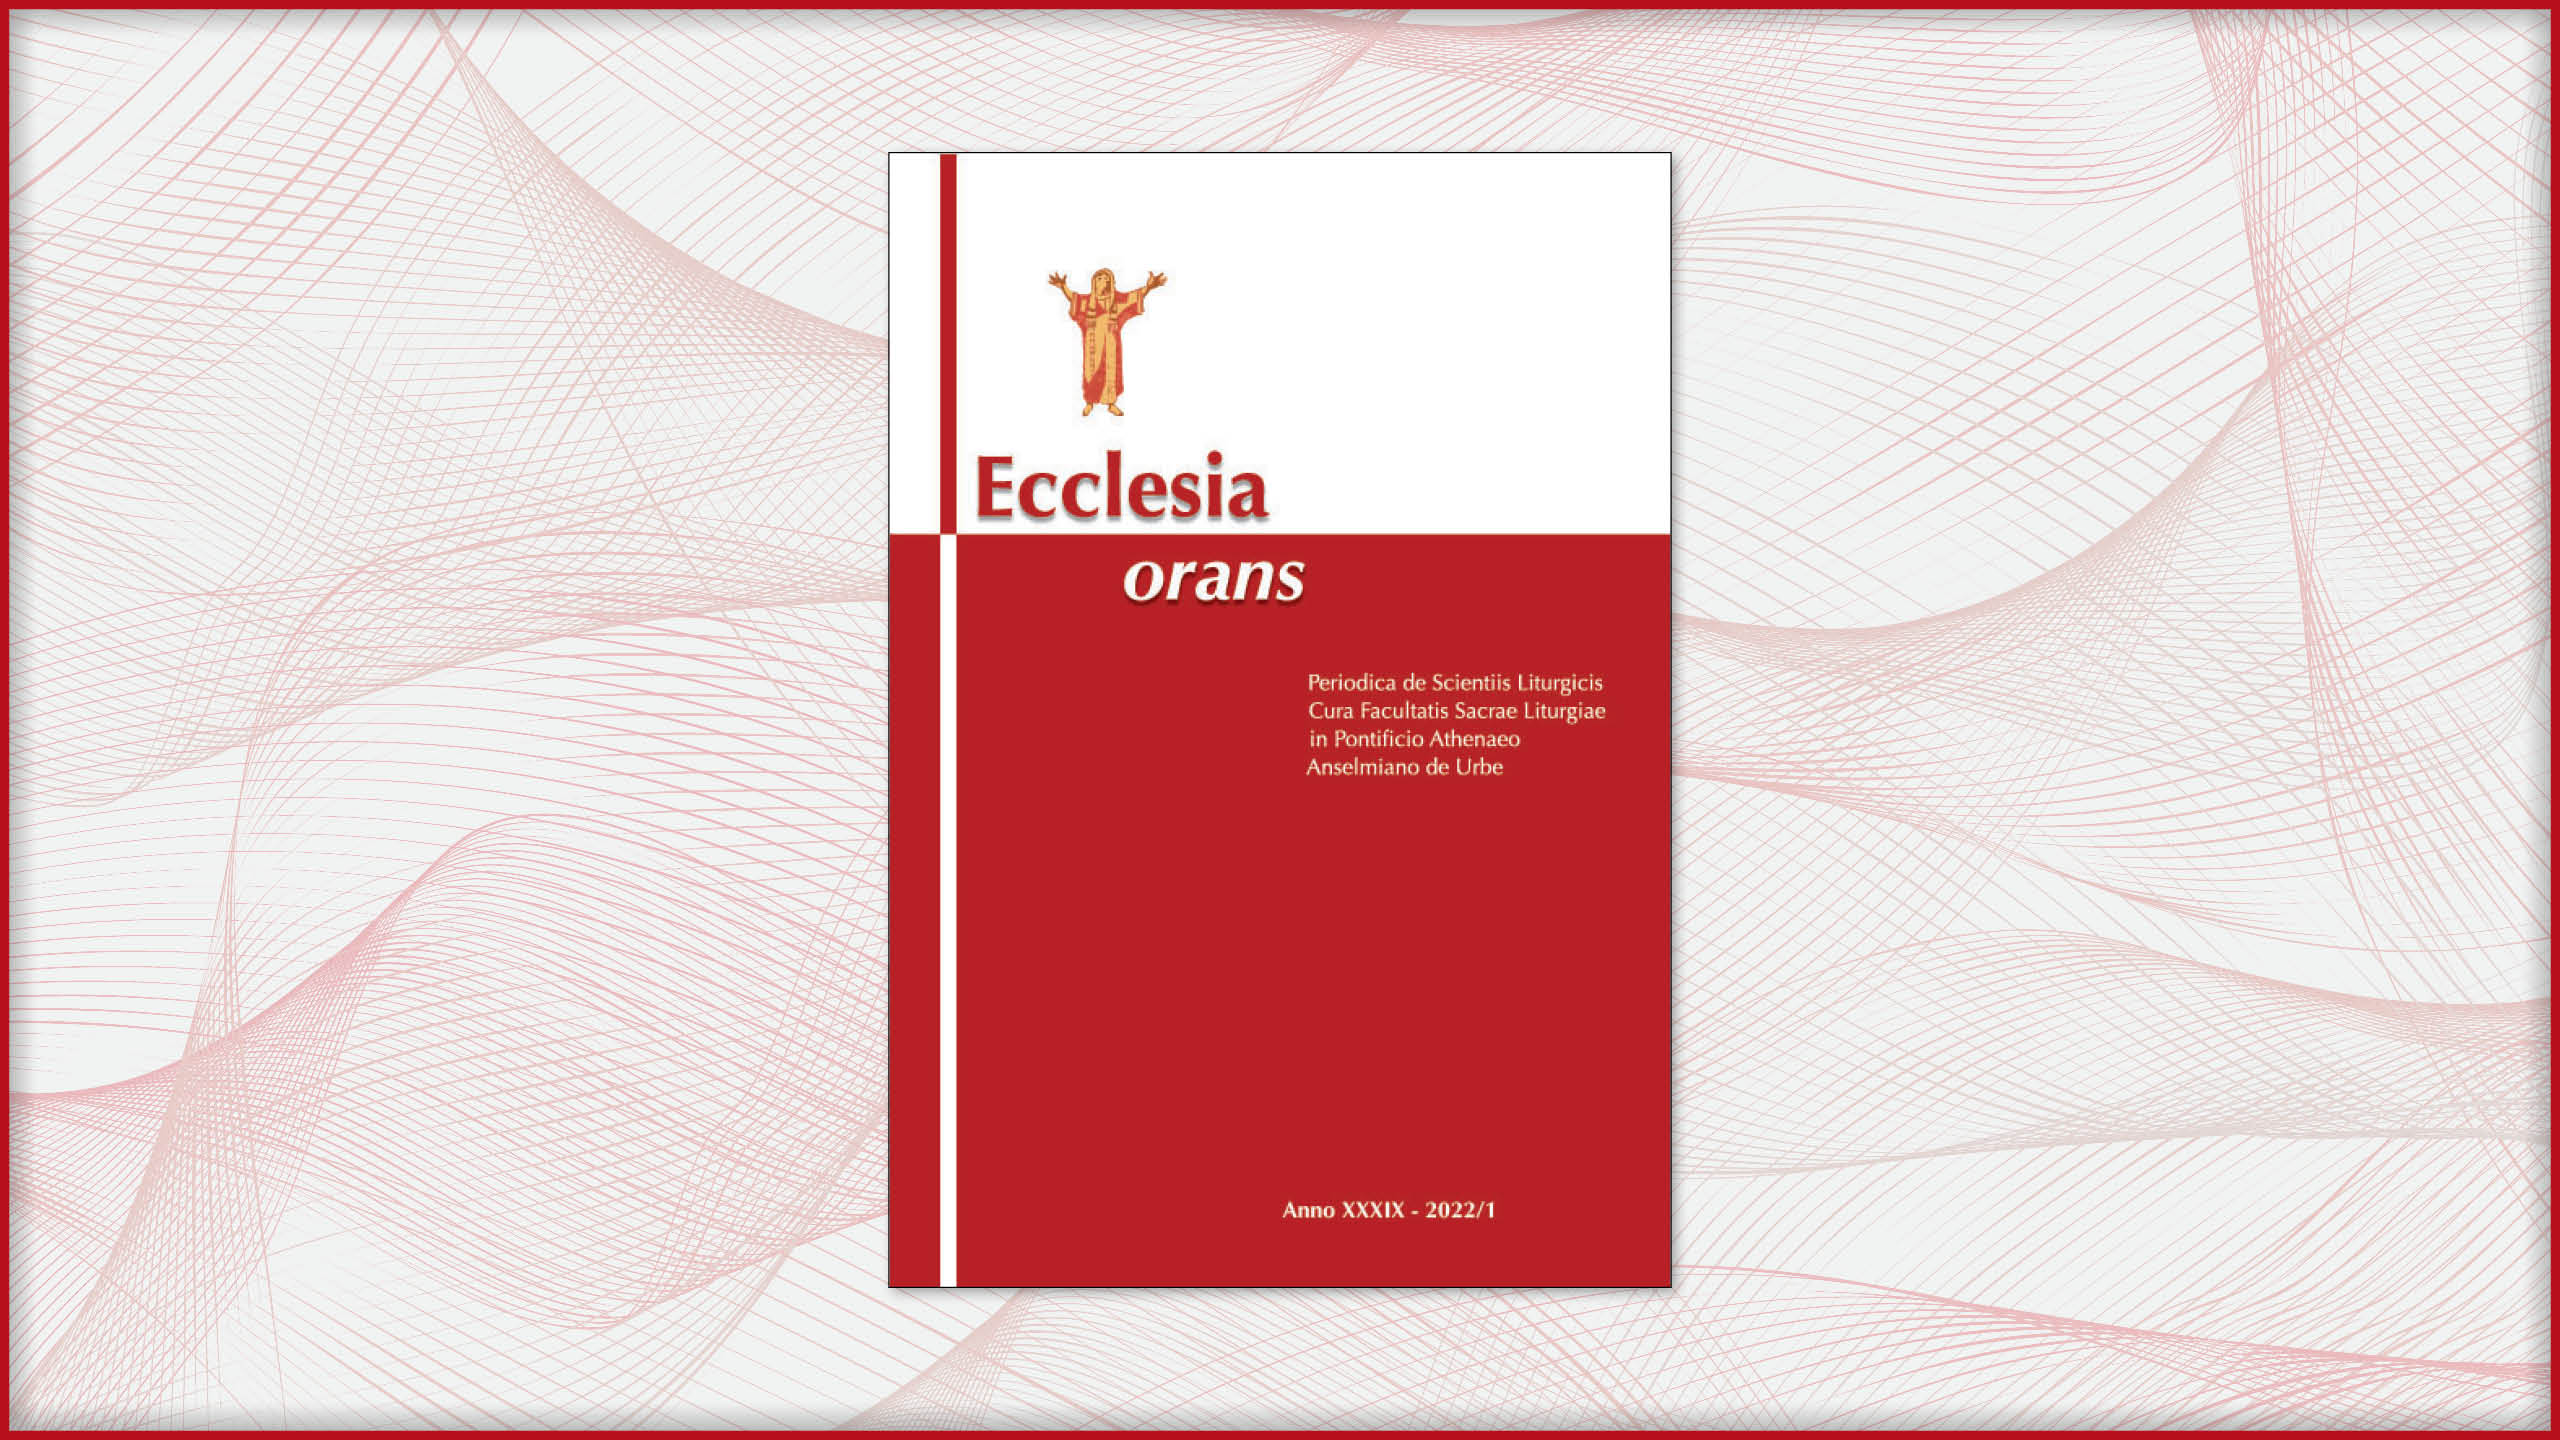 Ecclesia orans 2022/1